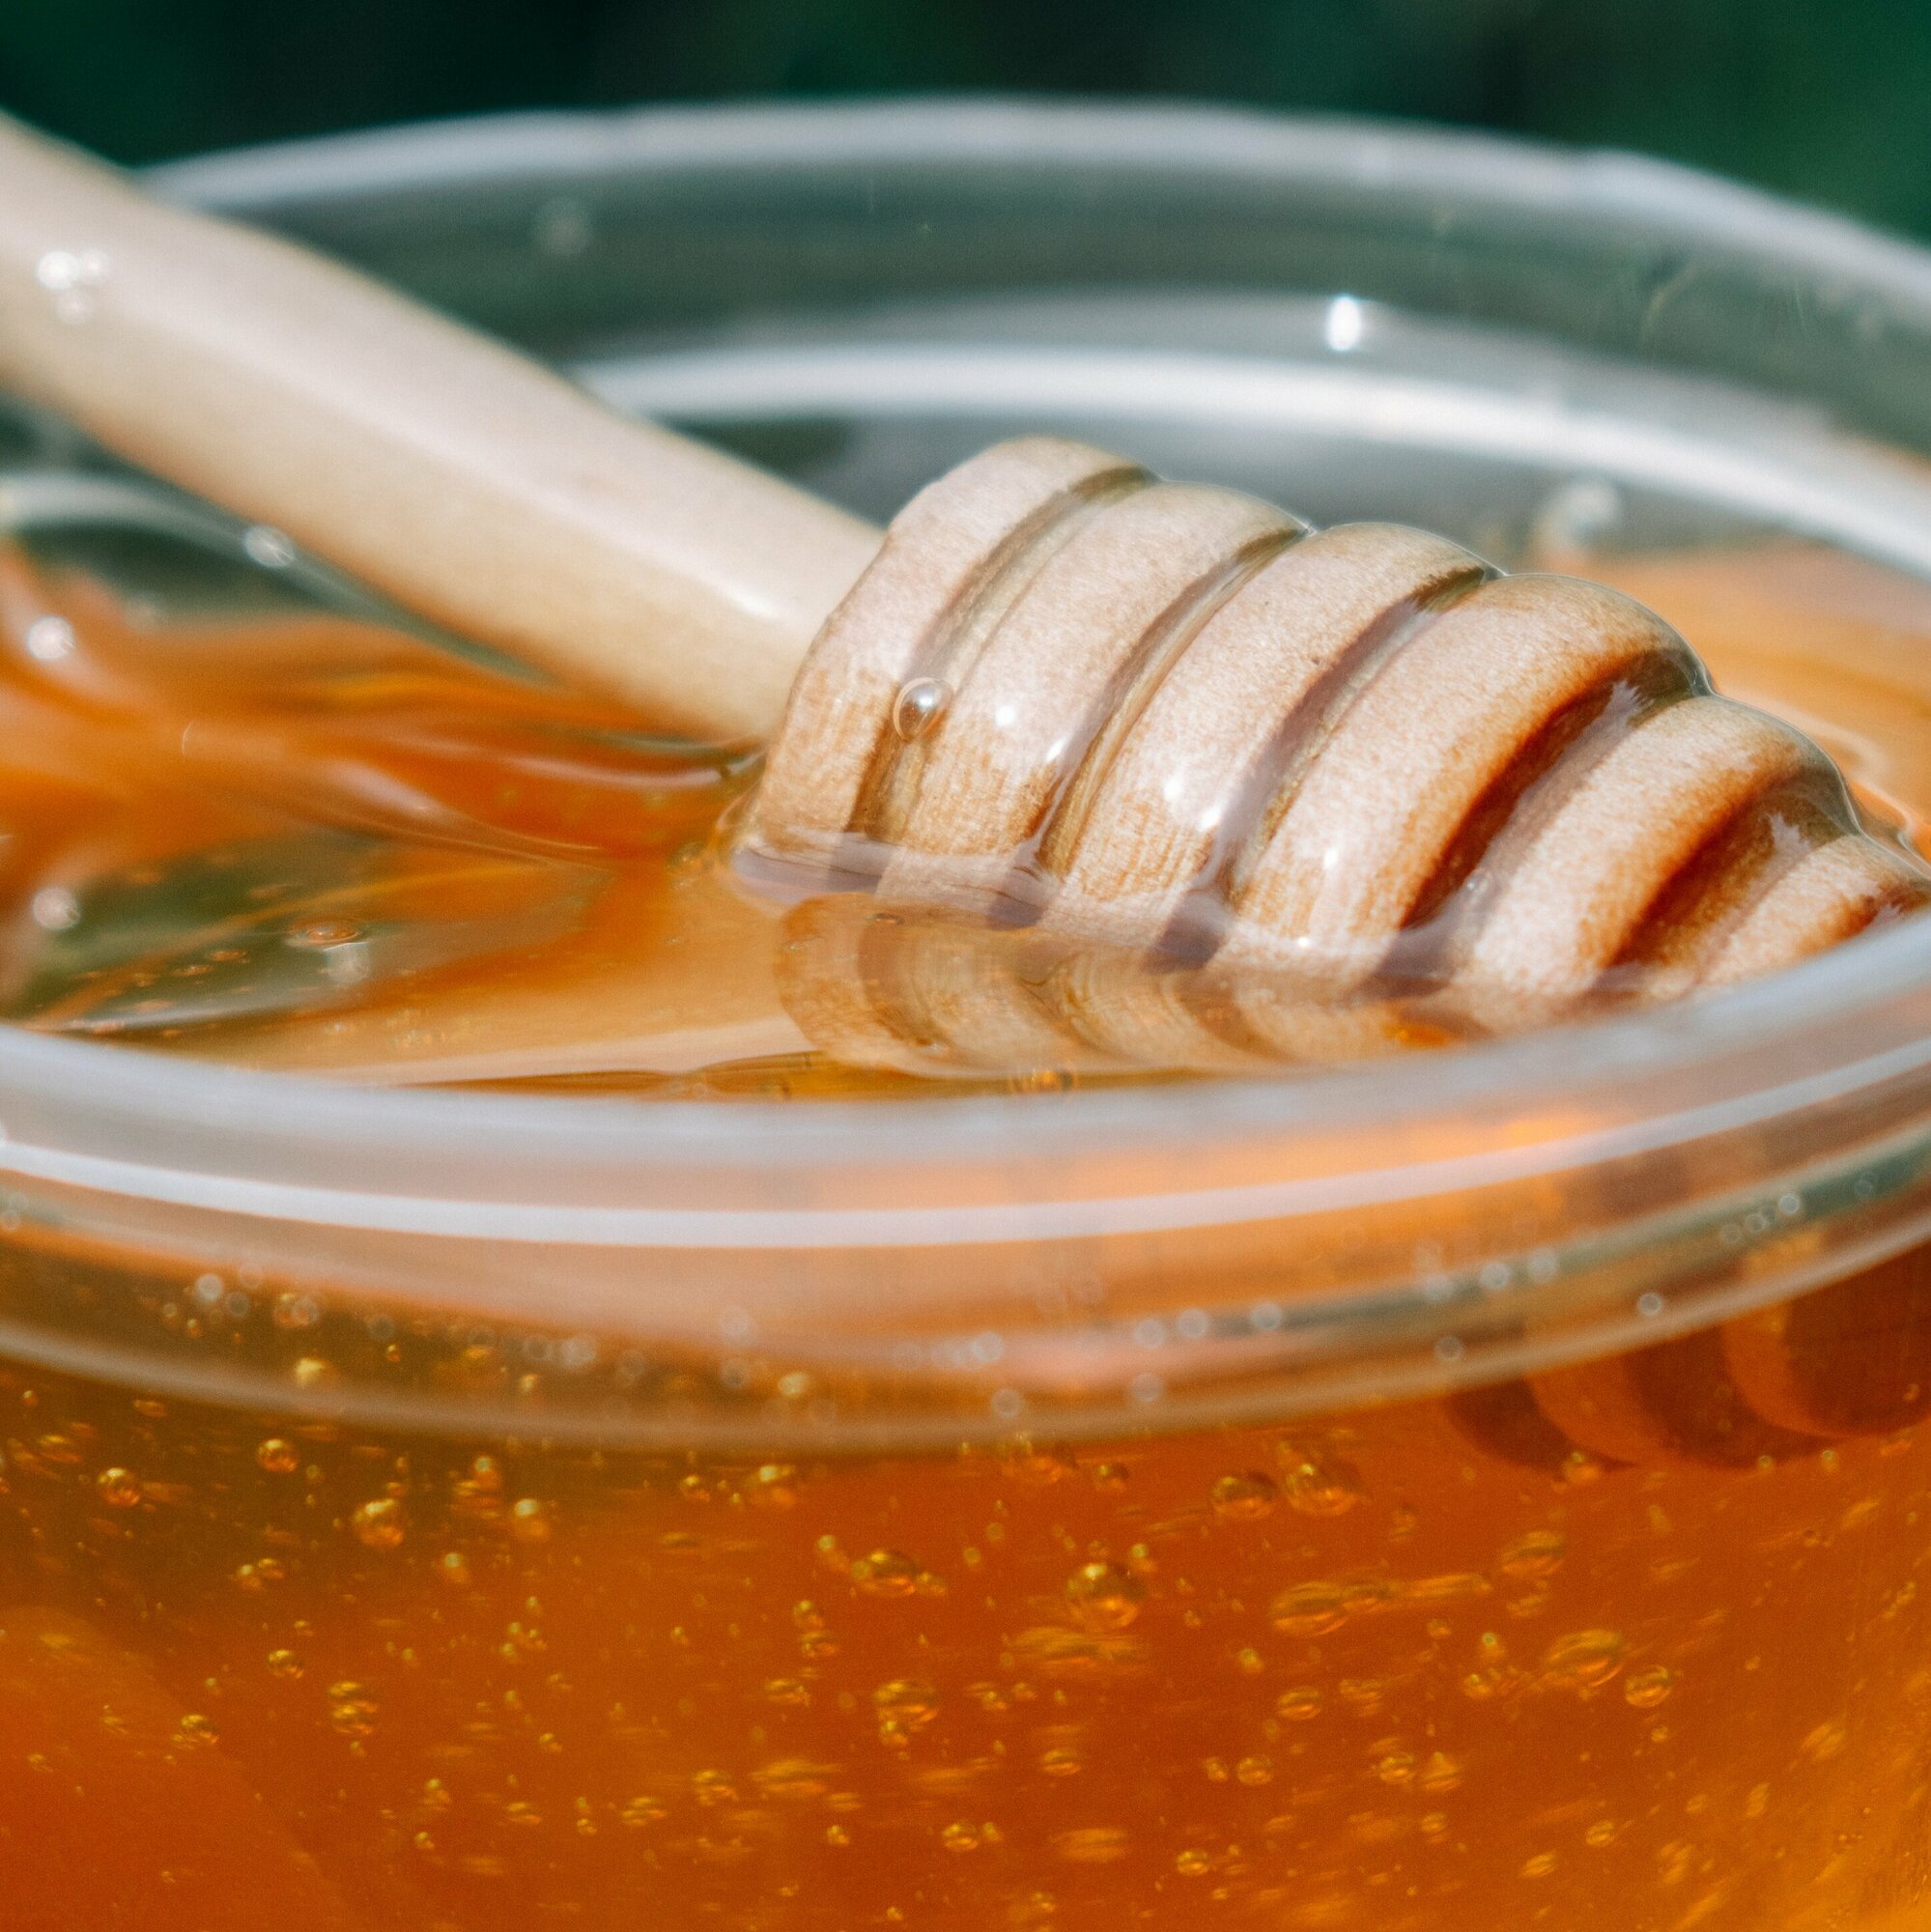 мед башкирский липовый вкусный натуральный лечебный кондитерский без сахара без нагрева фасованный для вас - фотография № 5